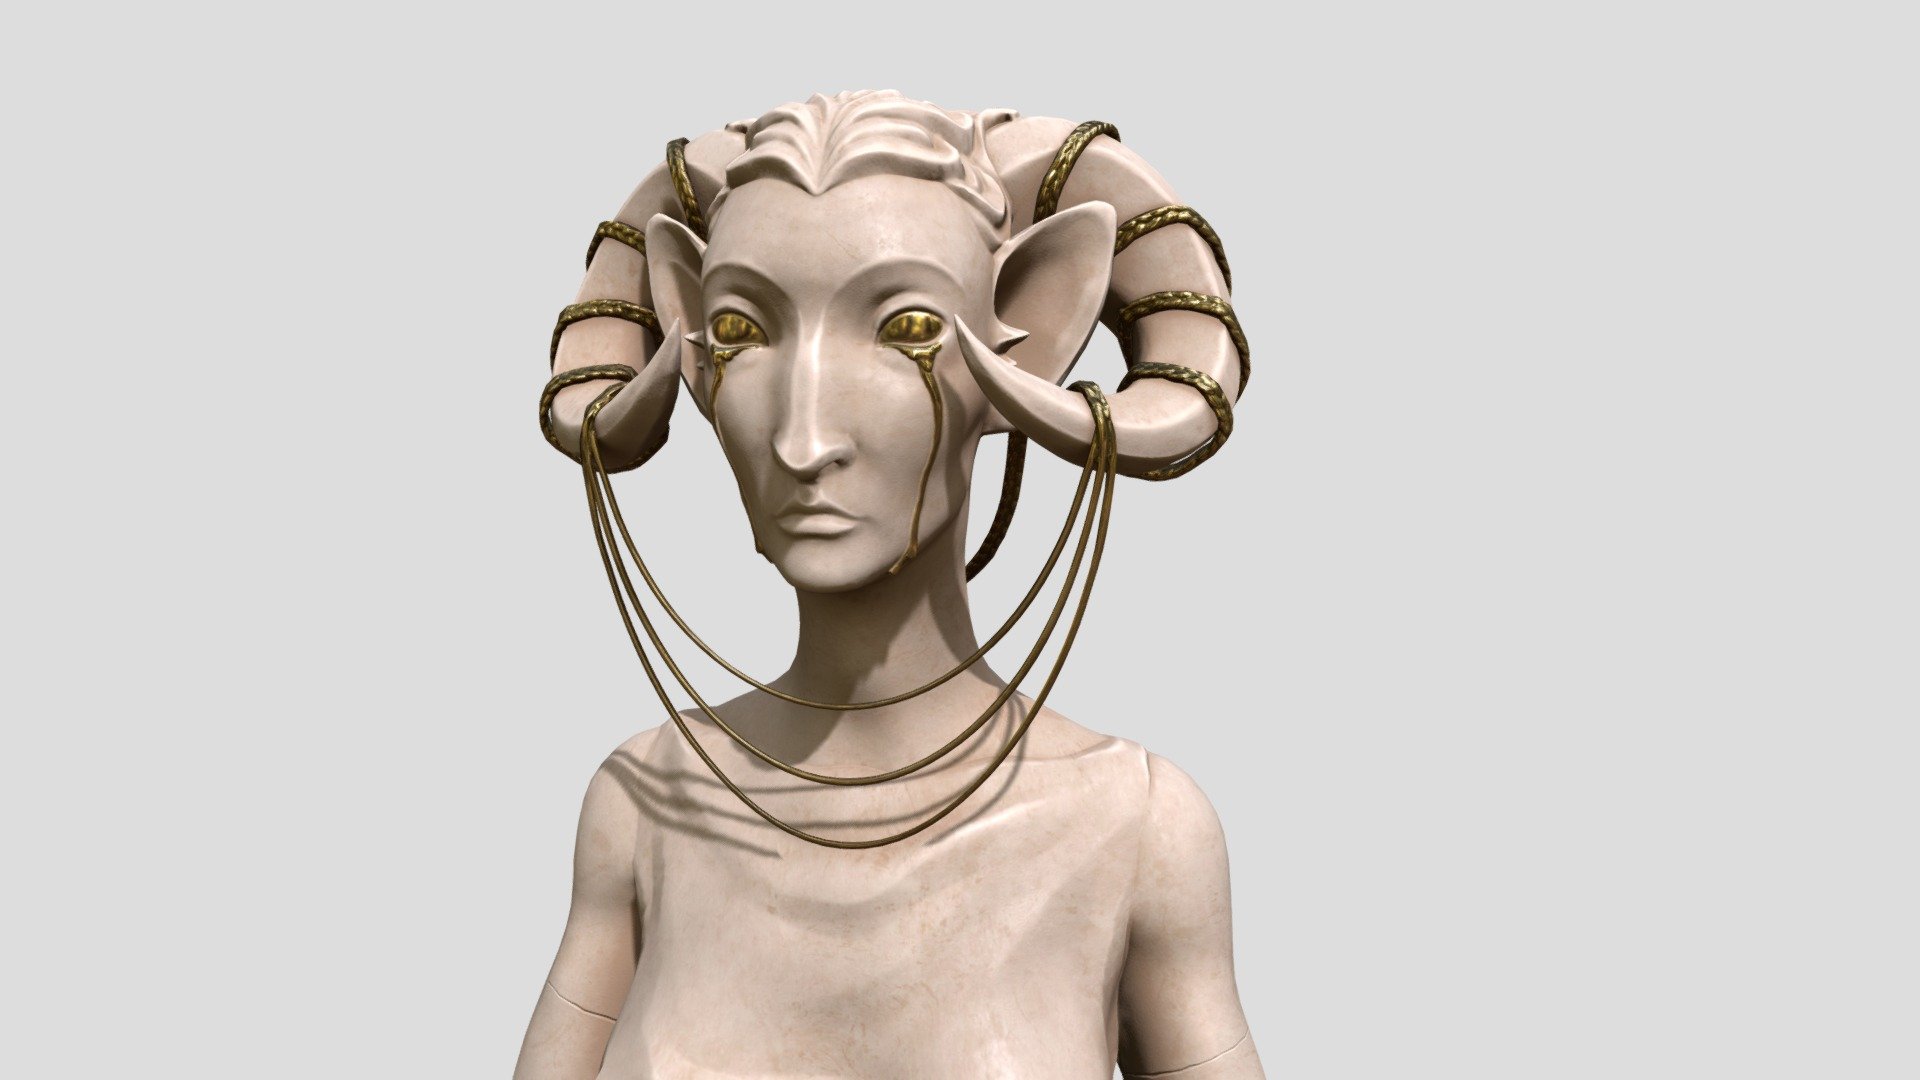 Goddess - 3D model by KRMacGregor [9ddc169] - Sketchfab